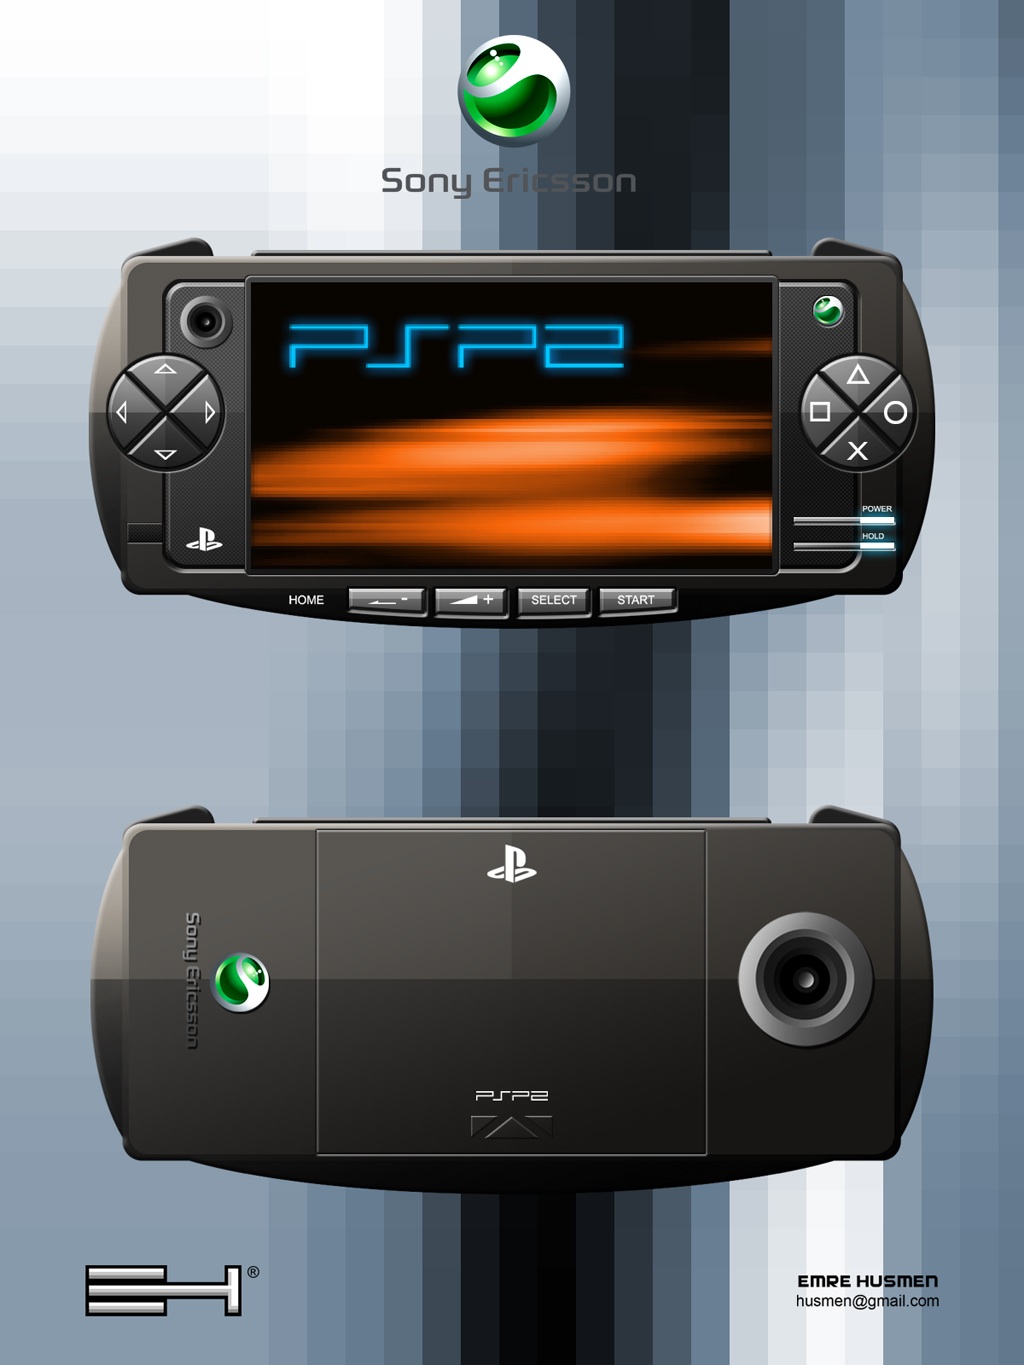 สาวก PSP new new coming soon  นานาจิตแล้วแต่จะเดา